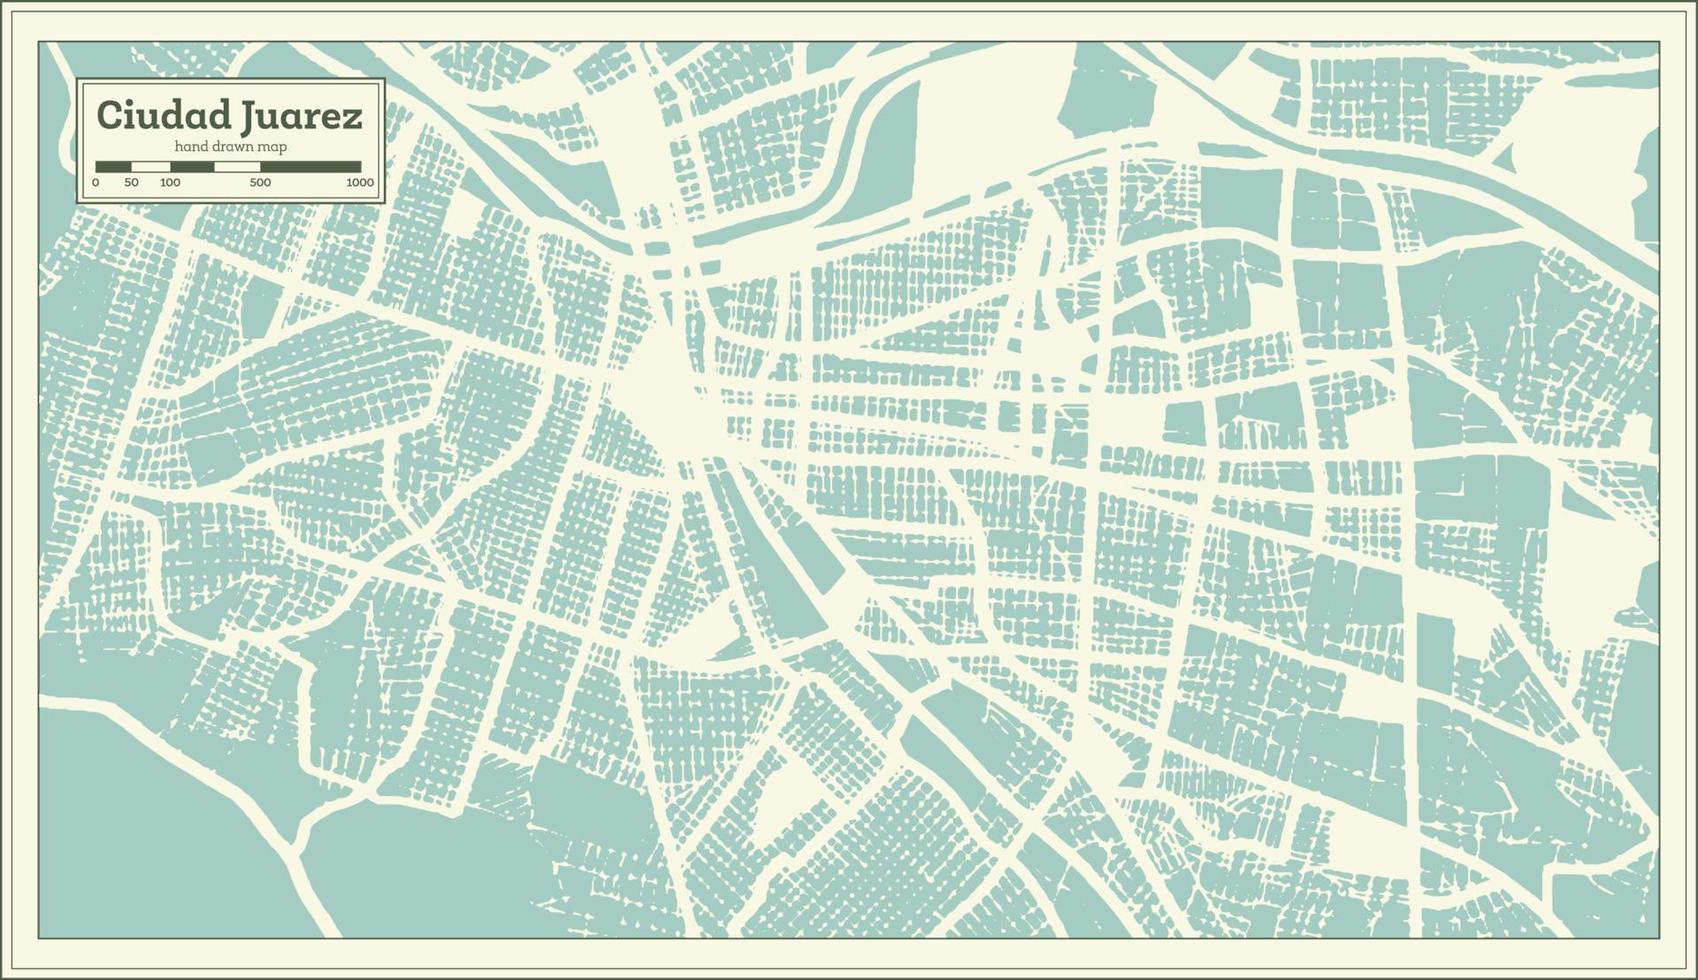 Ciudad Juarez Mexico City Map in Retro Style. Outline Map. vector